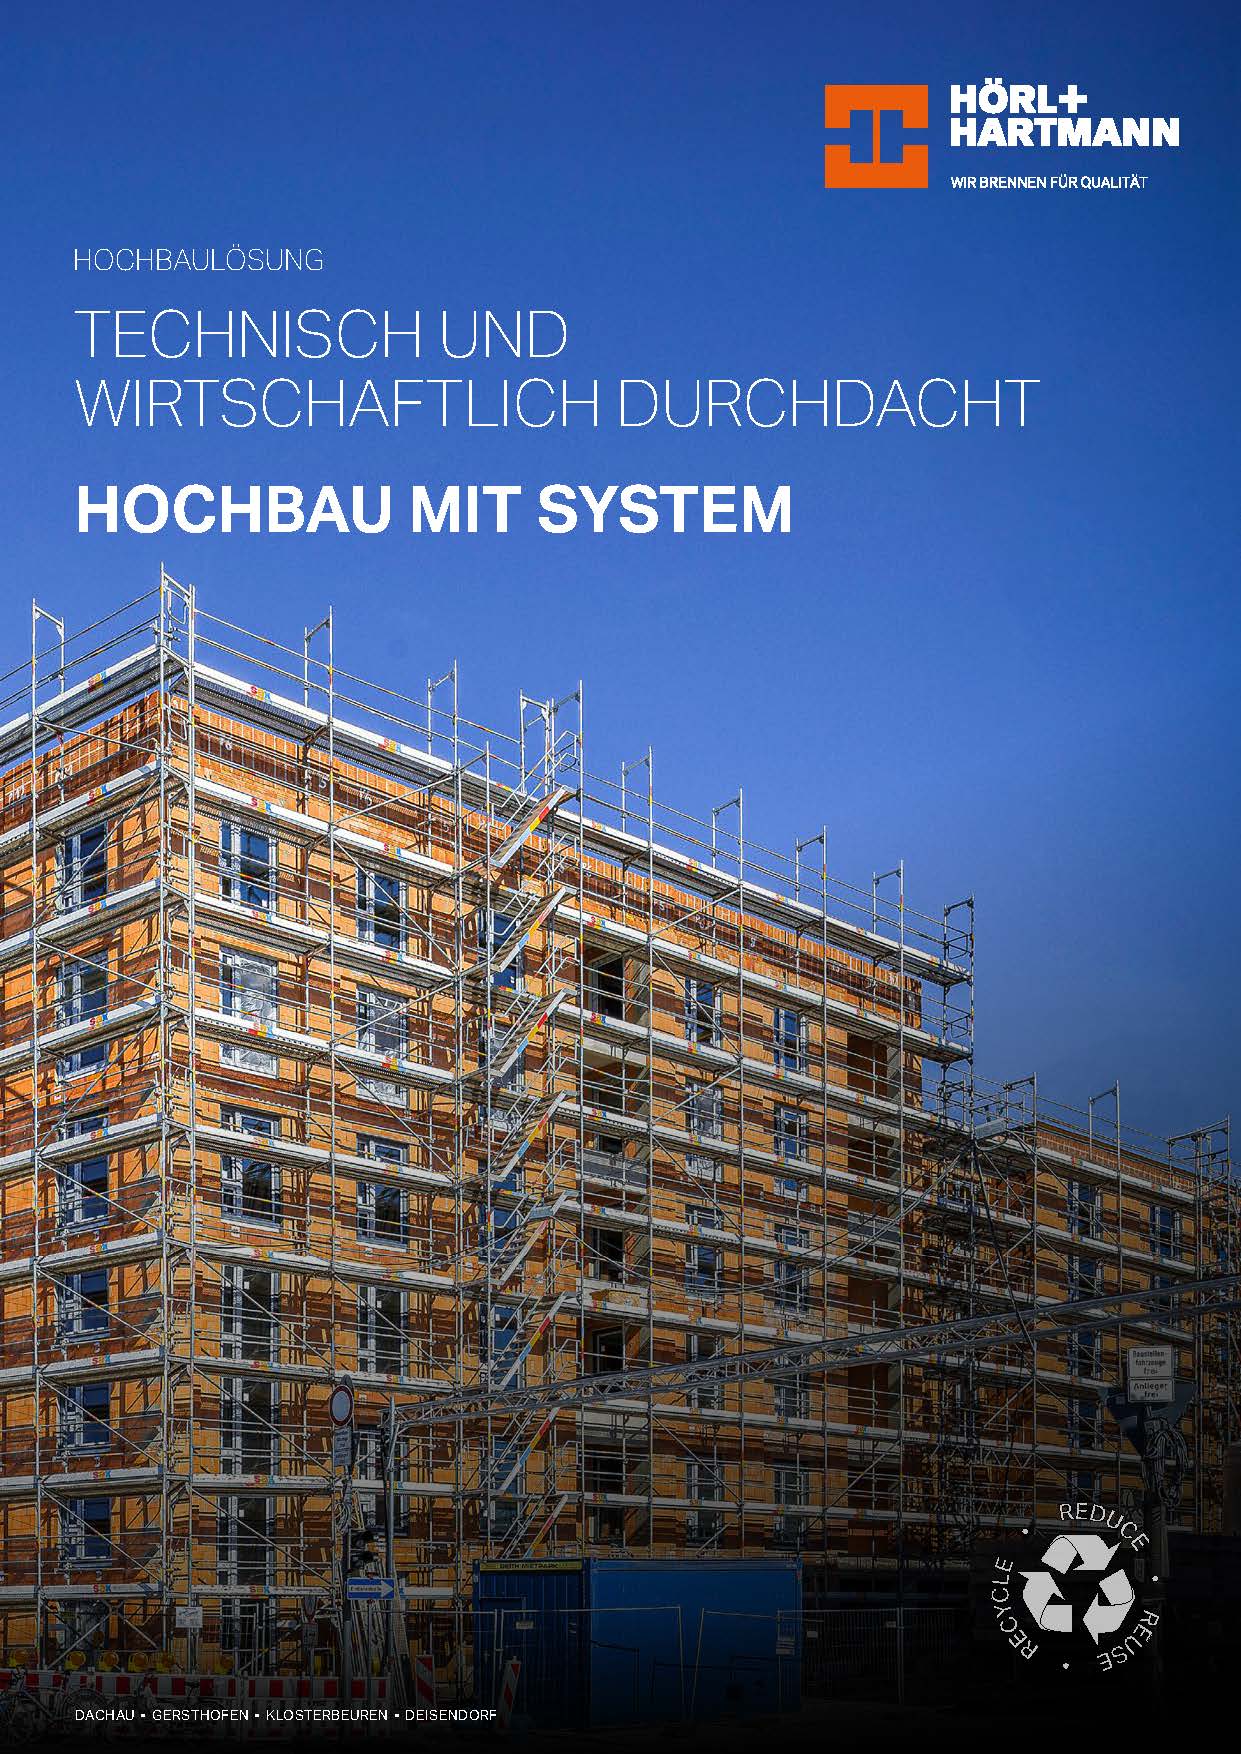 Hörl+Hartmann Hochbaubroschüre